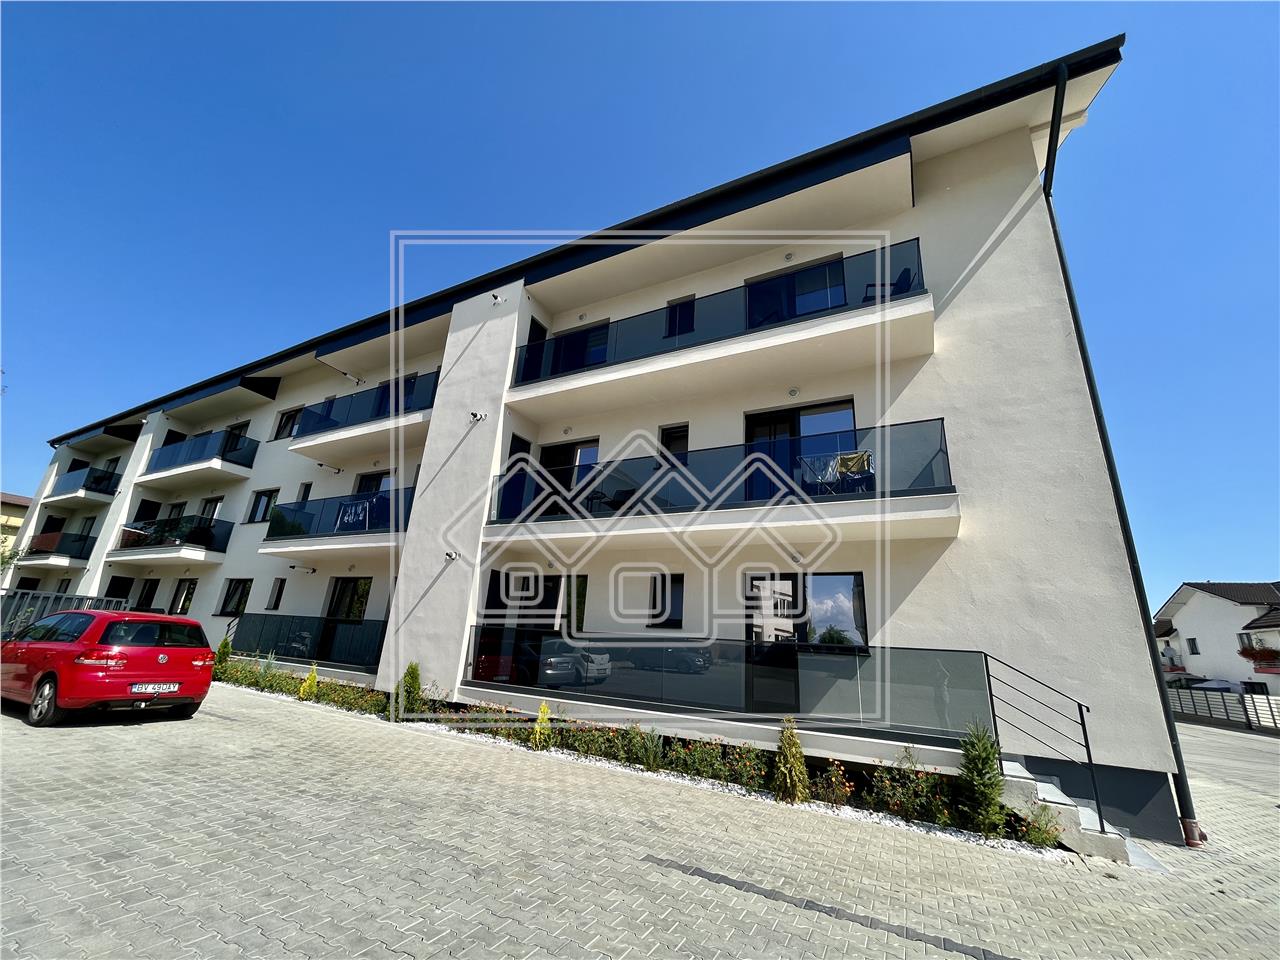 Apartament de vanzare in Sibiu - total decomandat - imobil nou